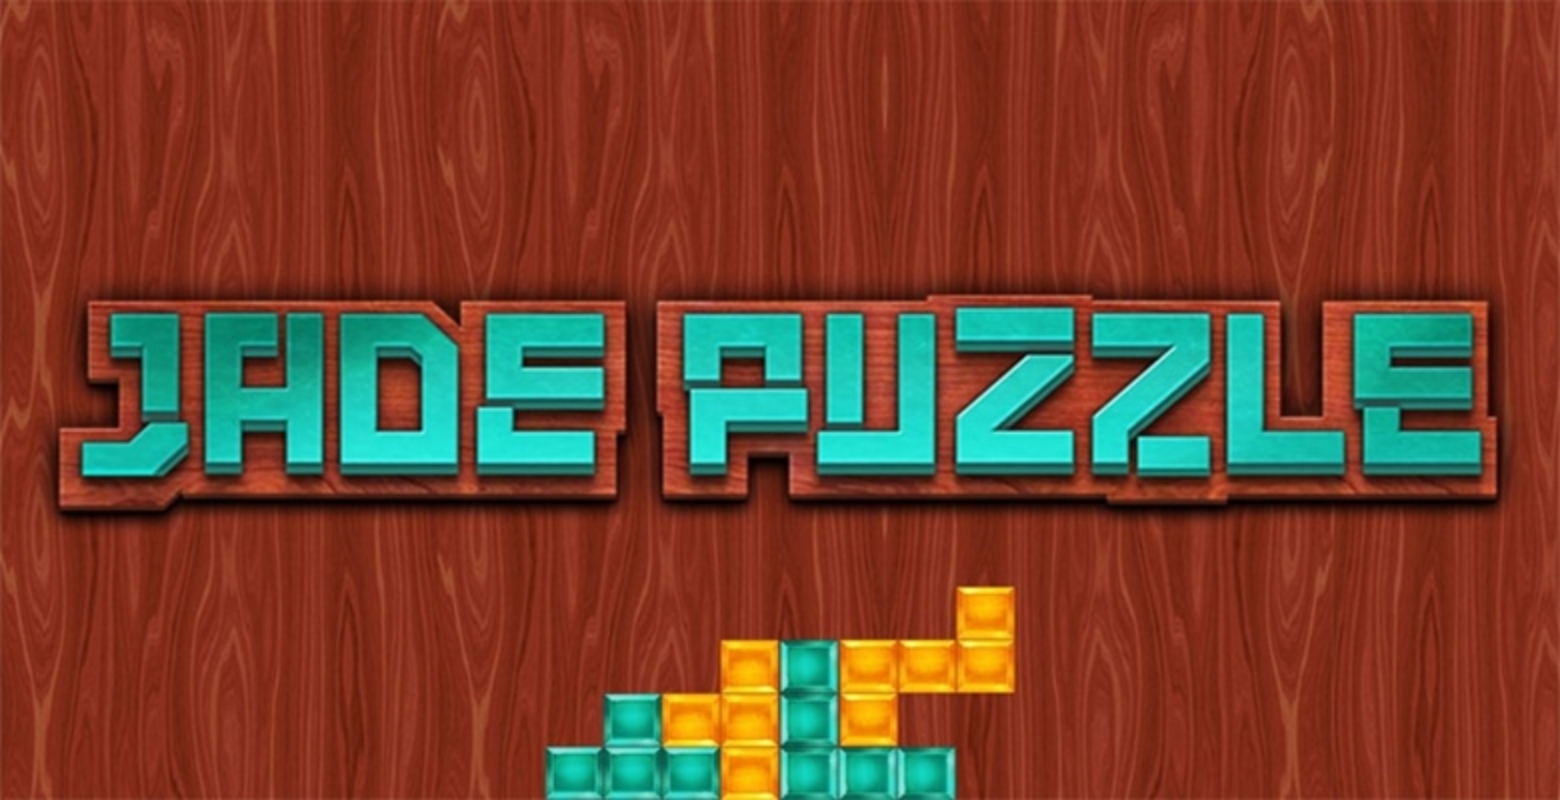 Jade Puzzle